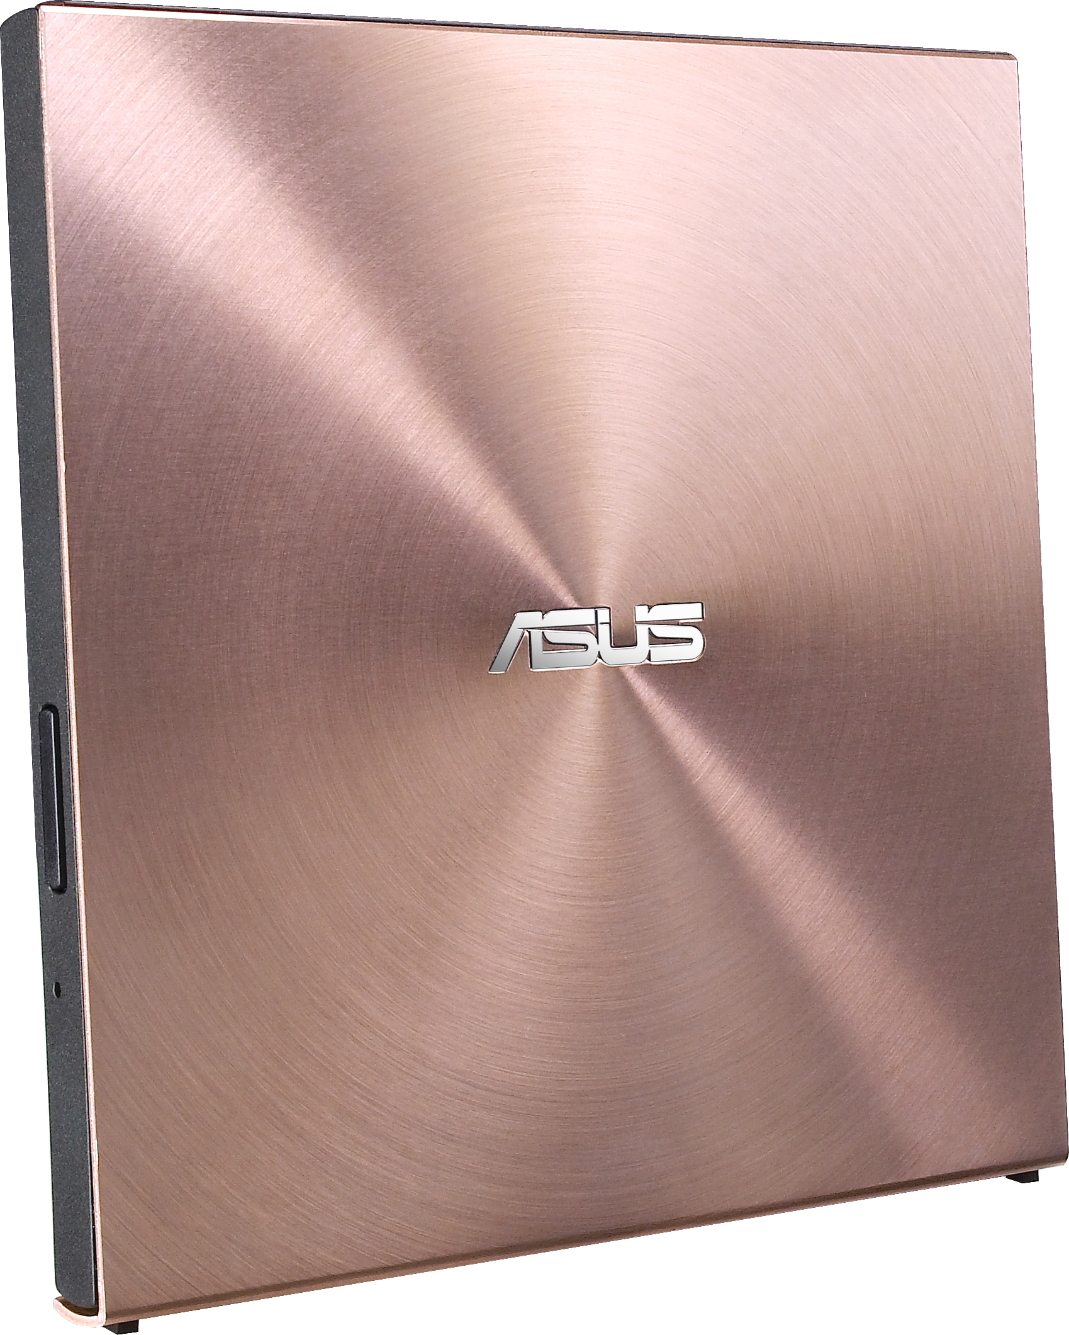 Външно записващо устройство ASUS UltraDrive SDRW-08U5S-U, Ultra Slim, 8X DVD burner, M-DISC support, Windows/Mac OS, Розово-1